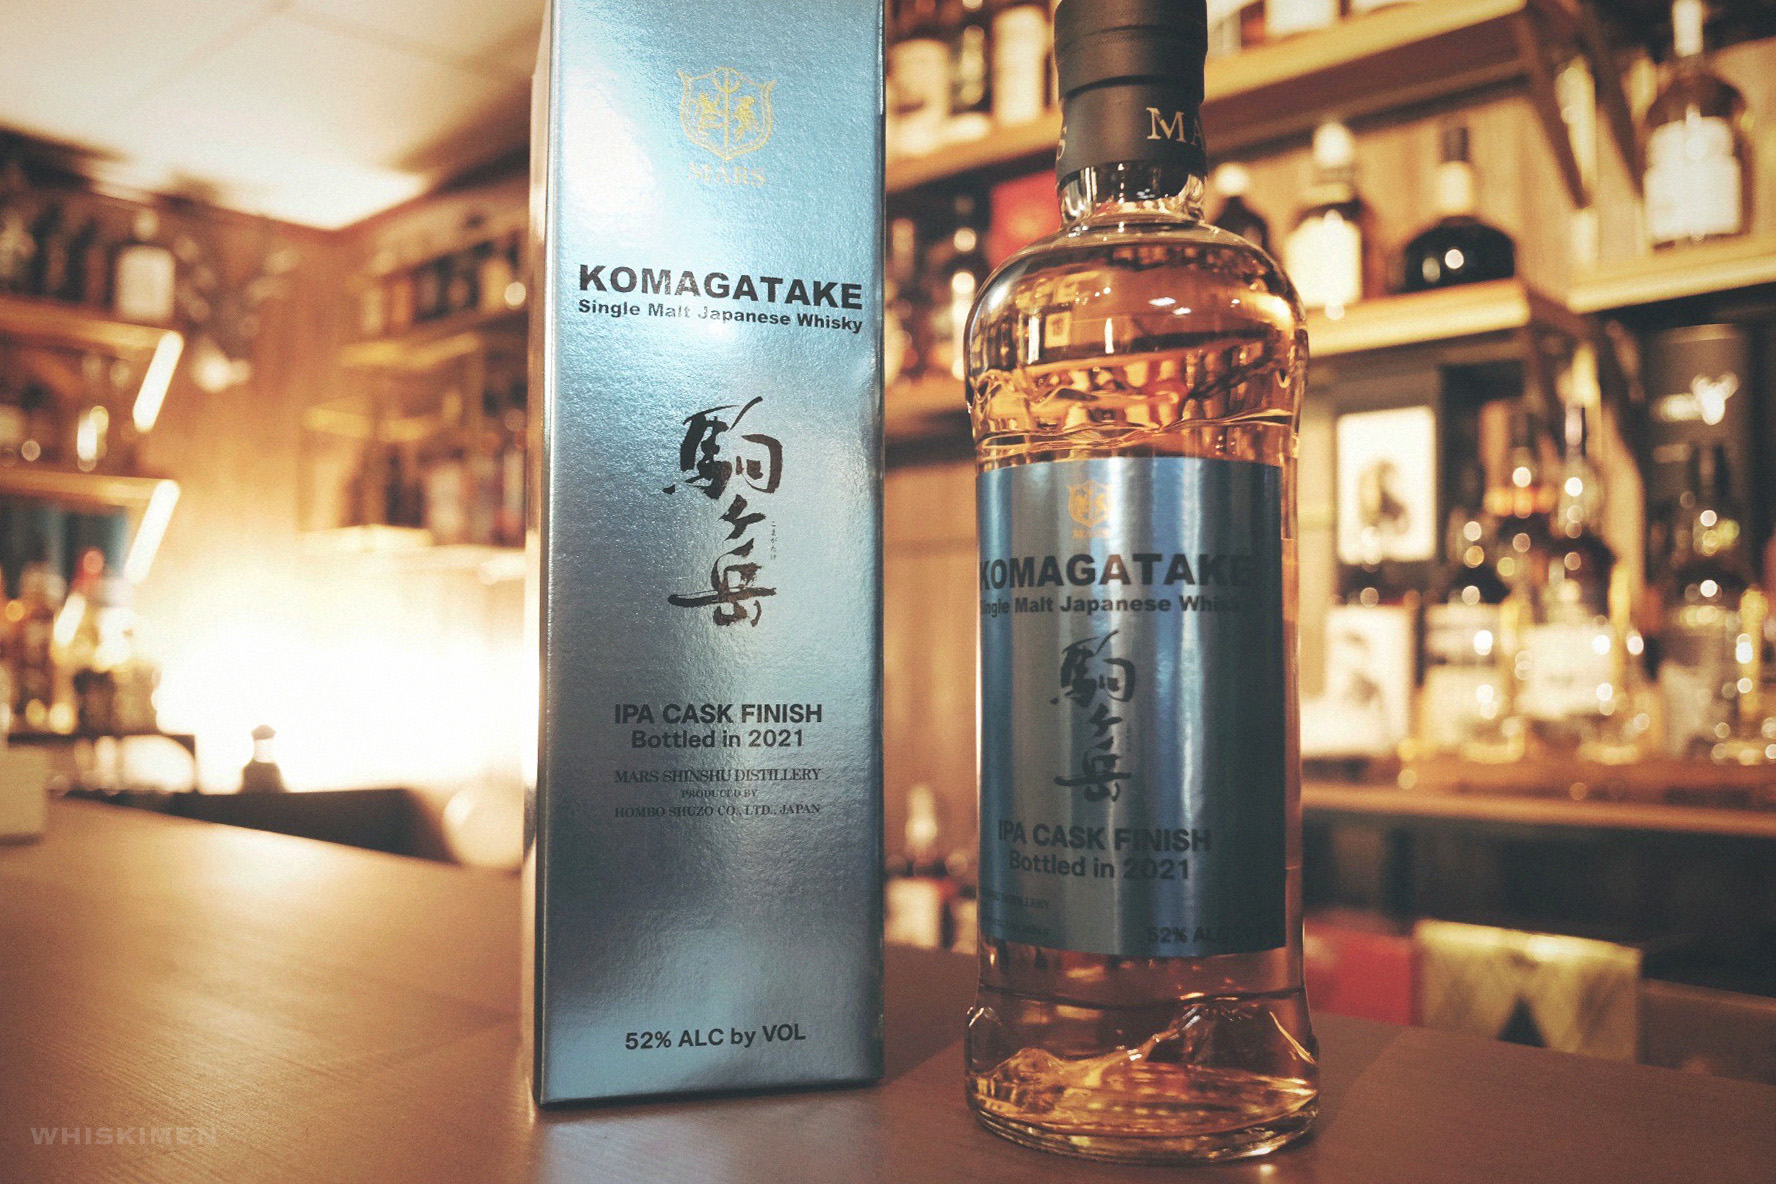 駒ヶ岳 Komagatake IPA Cask Finish Single Malt Japanese Whisky (2021 Edition)